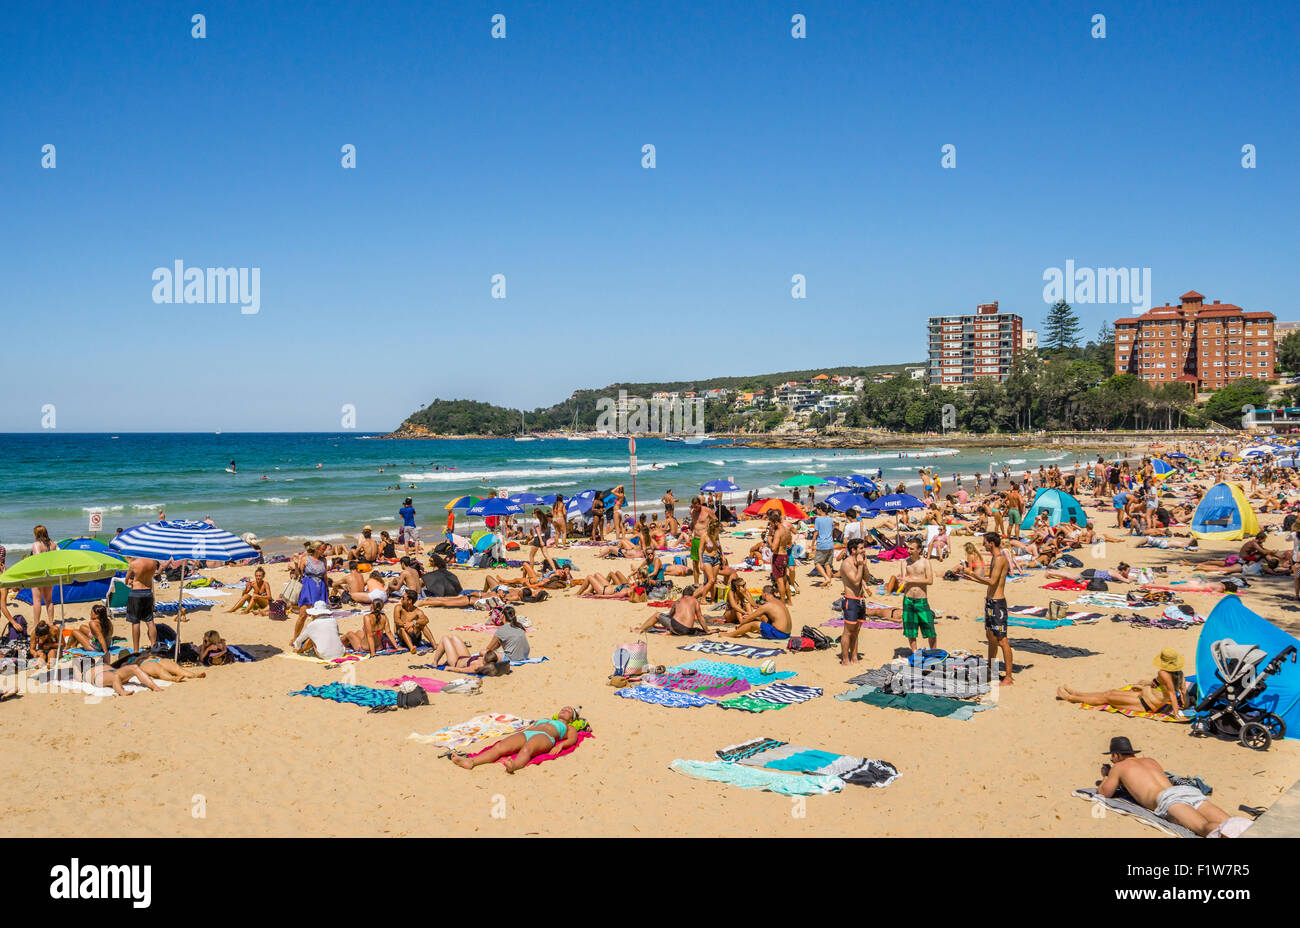 Australia, Nueva Gales del Sur, del lado de la playa de Manly, suburbio del norte de Sydney, la vista de la playa de Manly en un día soleado de verano Foto de stock